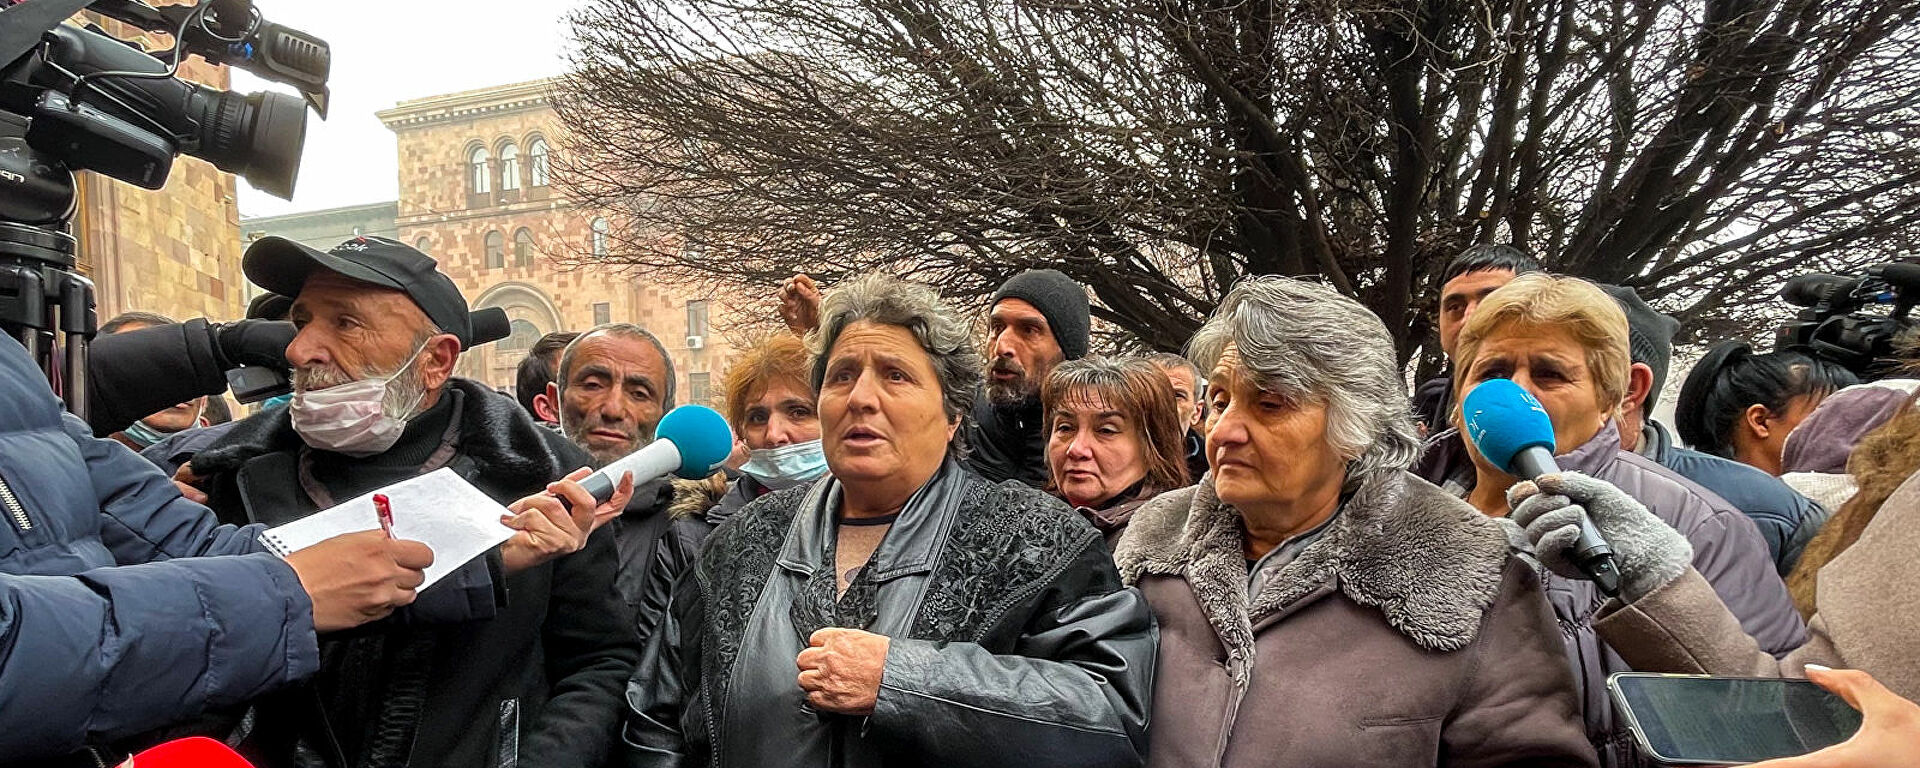 Երևանում երկու բողոքի ակցիա է տեղի ունենում